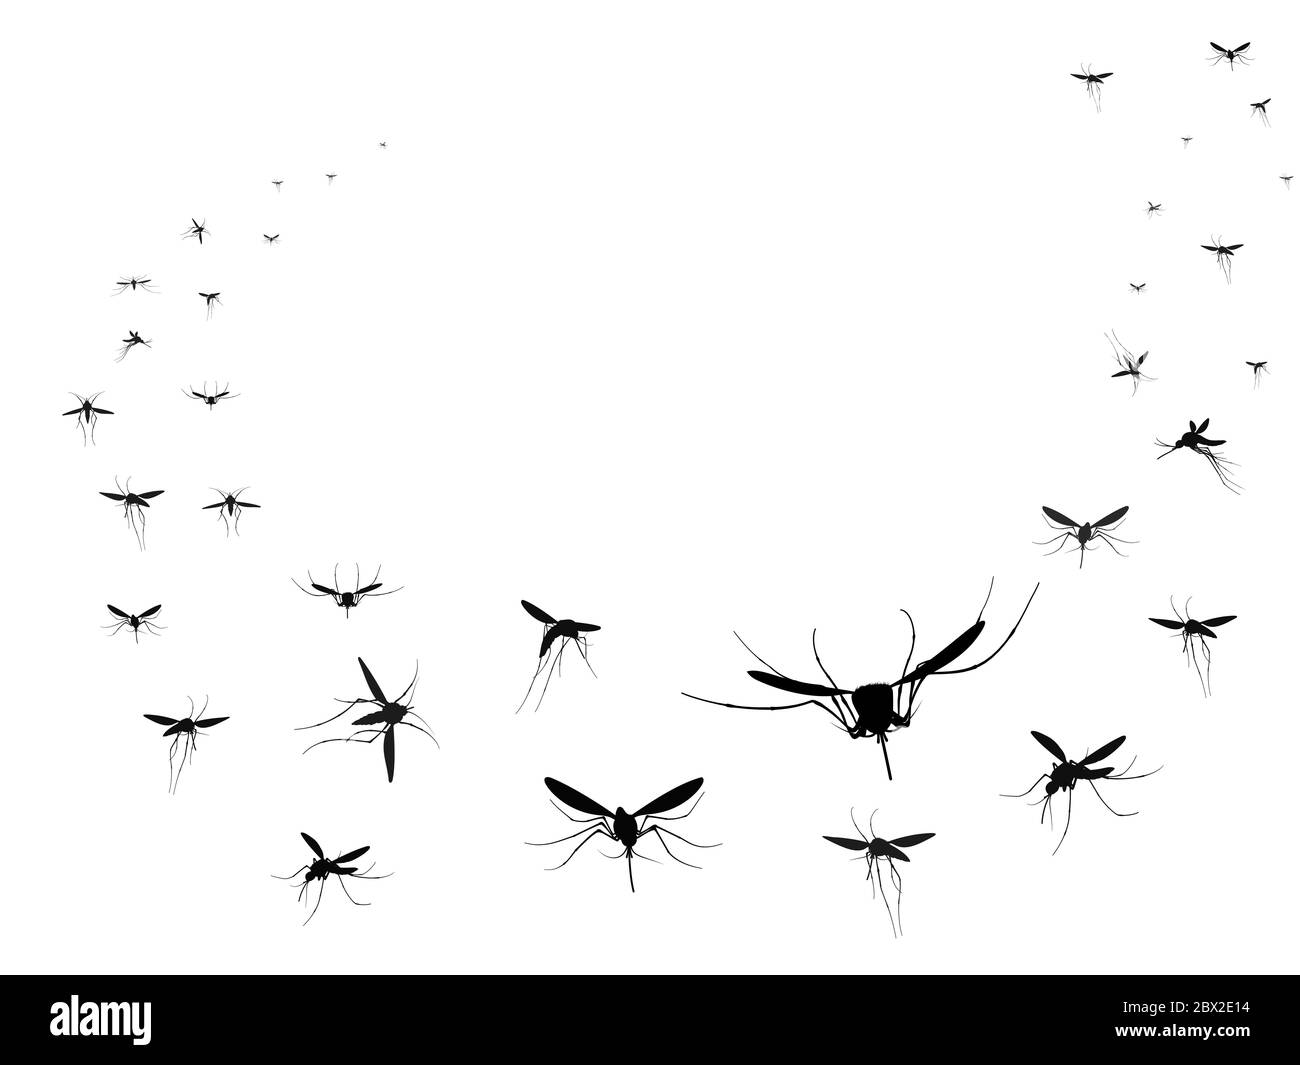 Groupe silhouettes de moustiques volants. Insectes volants maladies de propagation des essaims infection et virus dangereux, ronger vecteur d'onde noire Illustration de Vecteur